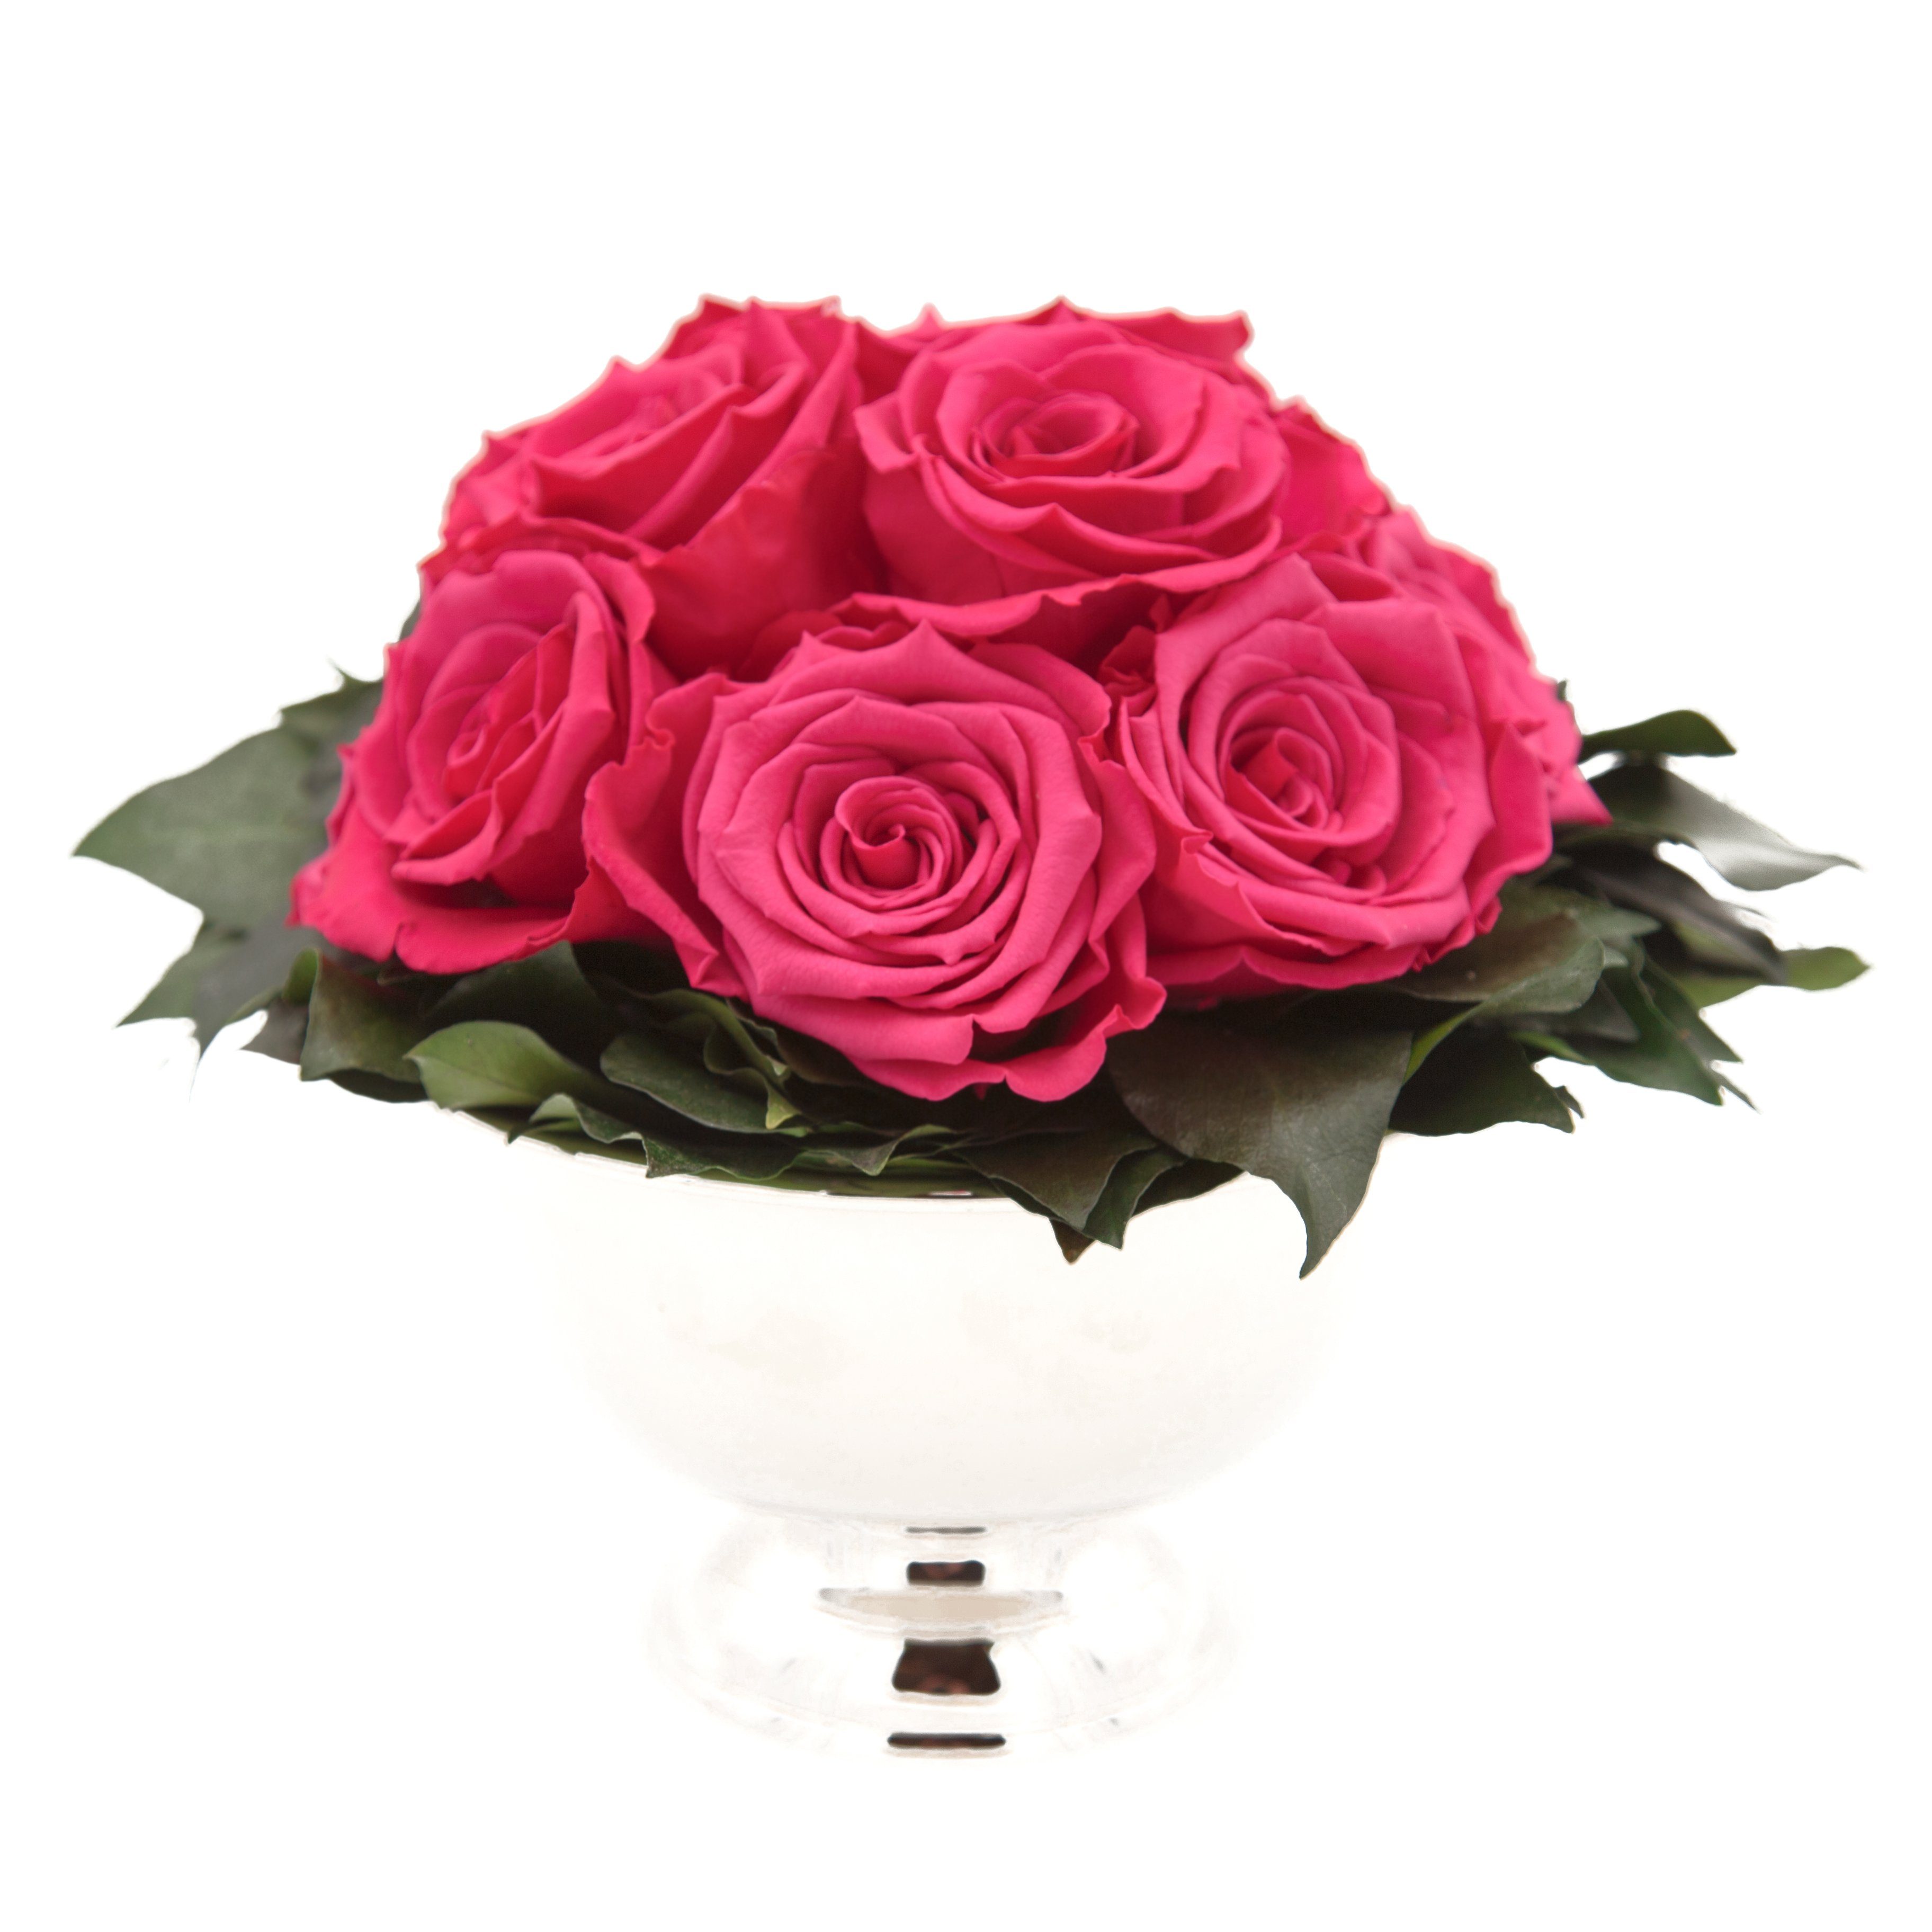 Kunstblume 11 Infinity Rosen in Blumenschale Blumenstrauß Rosenbox Rose, ROSEMARIE SCHULZ Heidelberg, Höhe 18 cm, Echte Blumen 3 Jahre haltbar I Geschenk für Frauen Pink